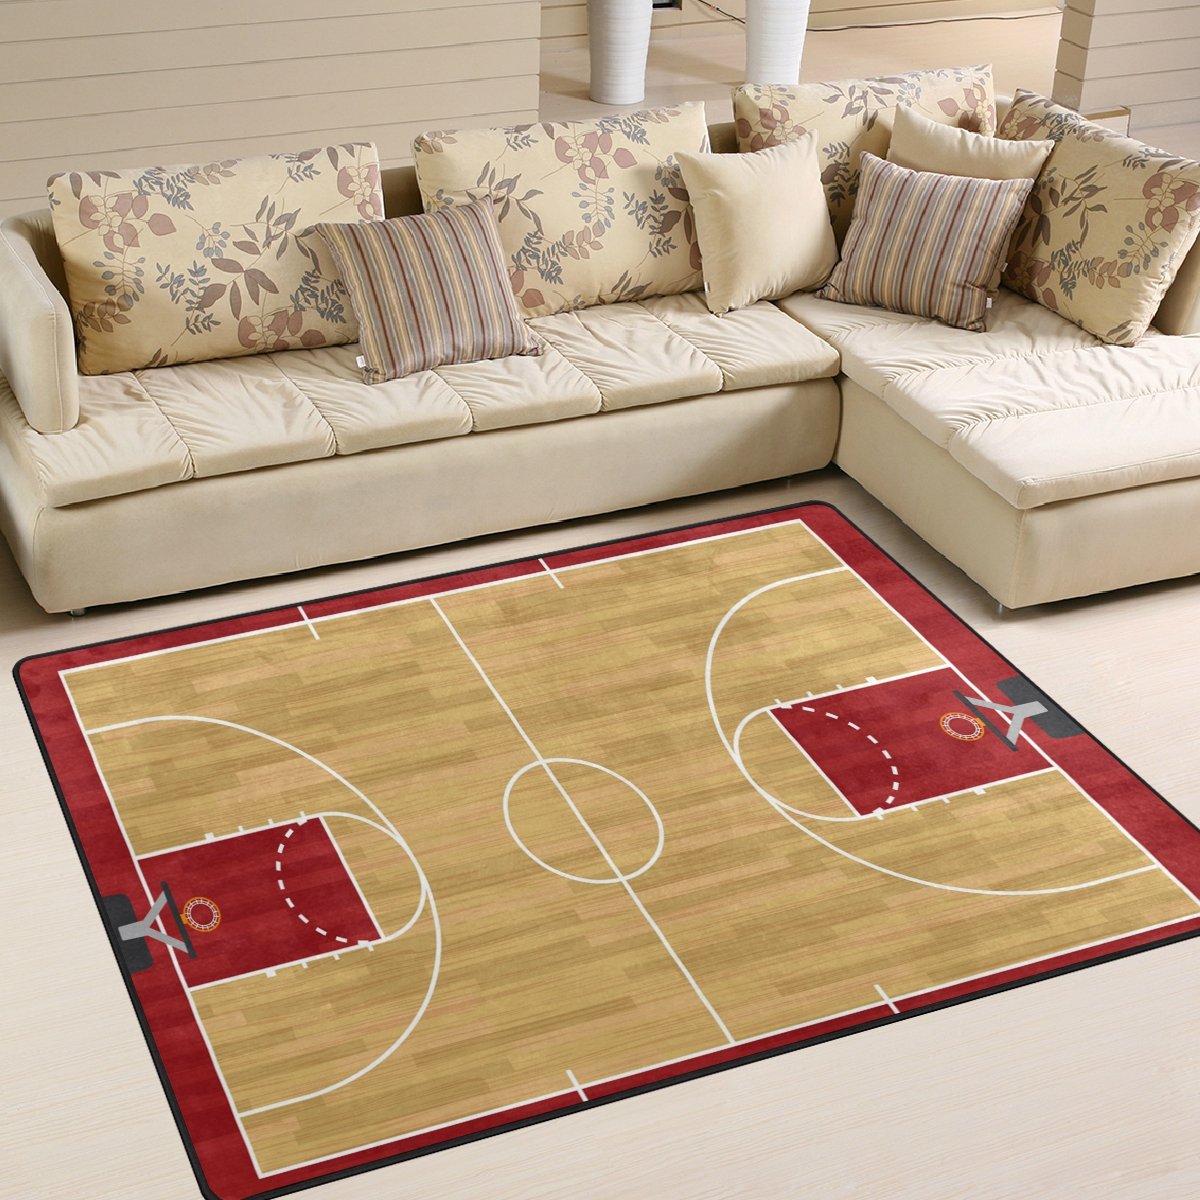 Use7 Basketball-Teppich im Retro-Stil, für Wohnzimmer, Schlafzimmer, 160 x 122 cm